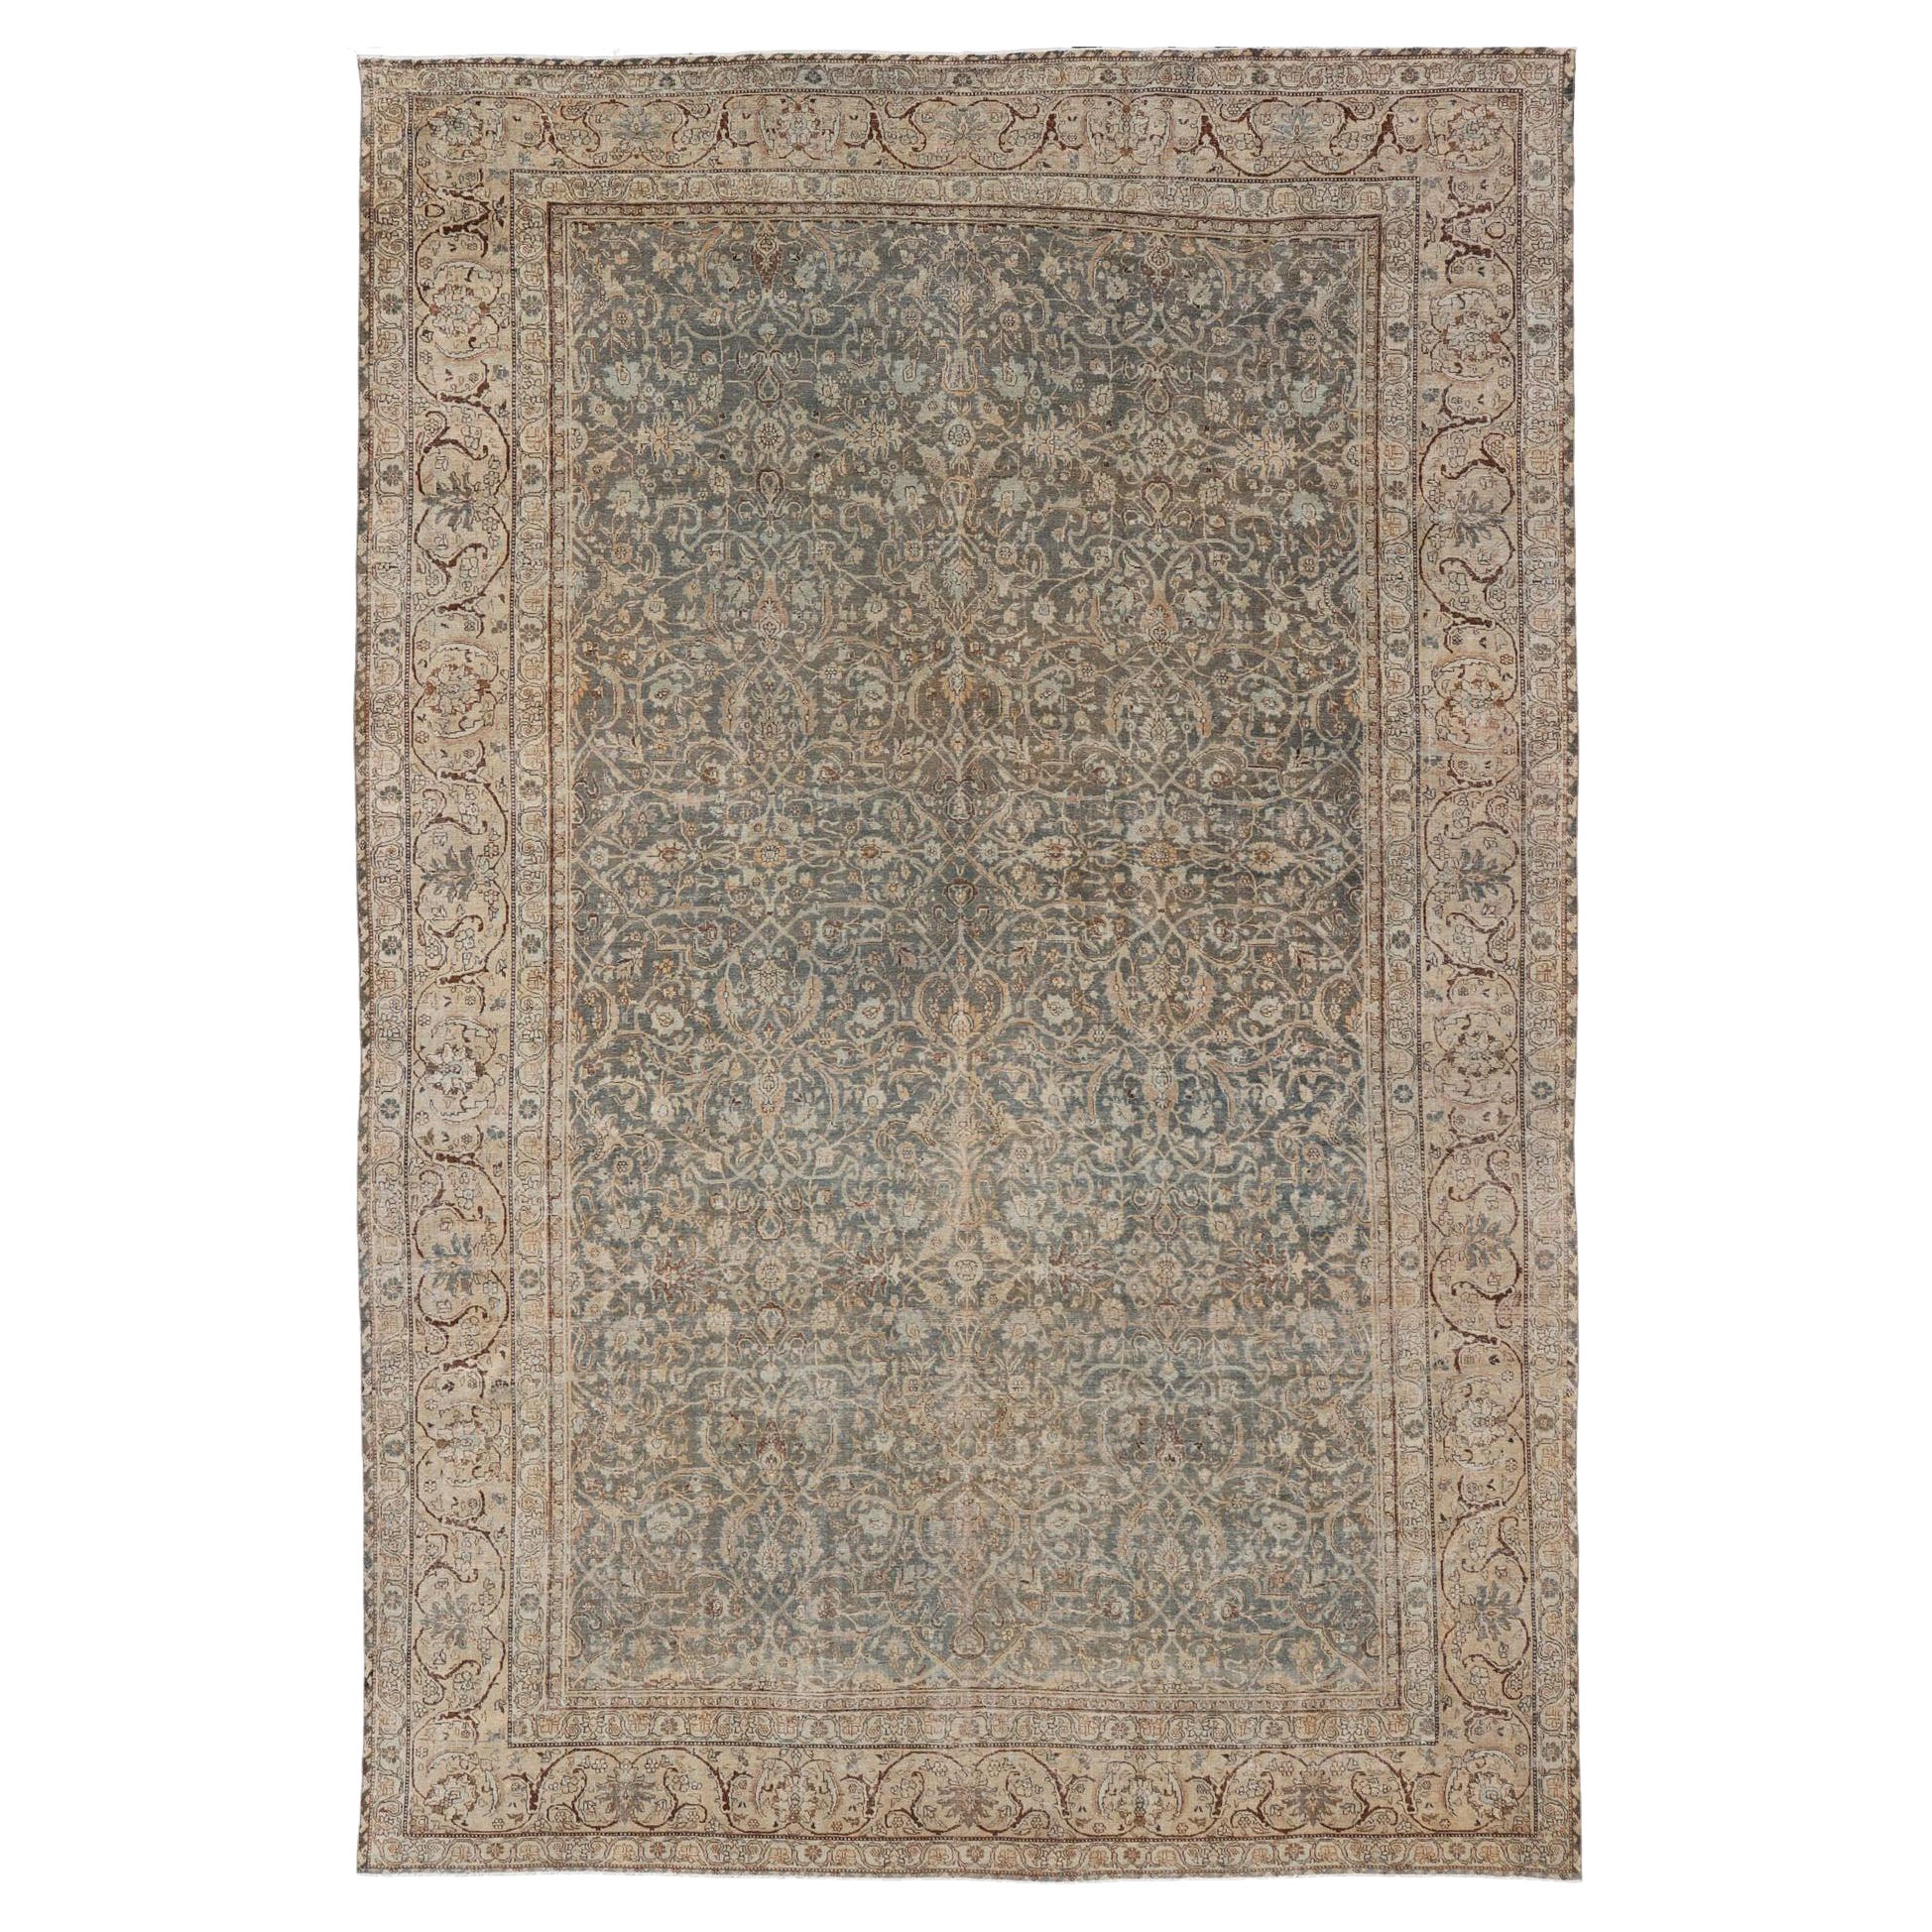 Großer antiker persischer Tabriz-Teppich, fein gewebt  Übergroßes geometrisches Design